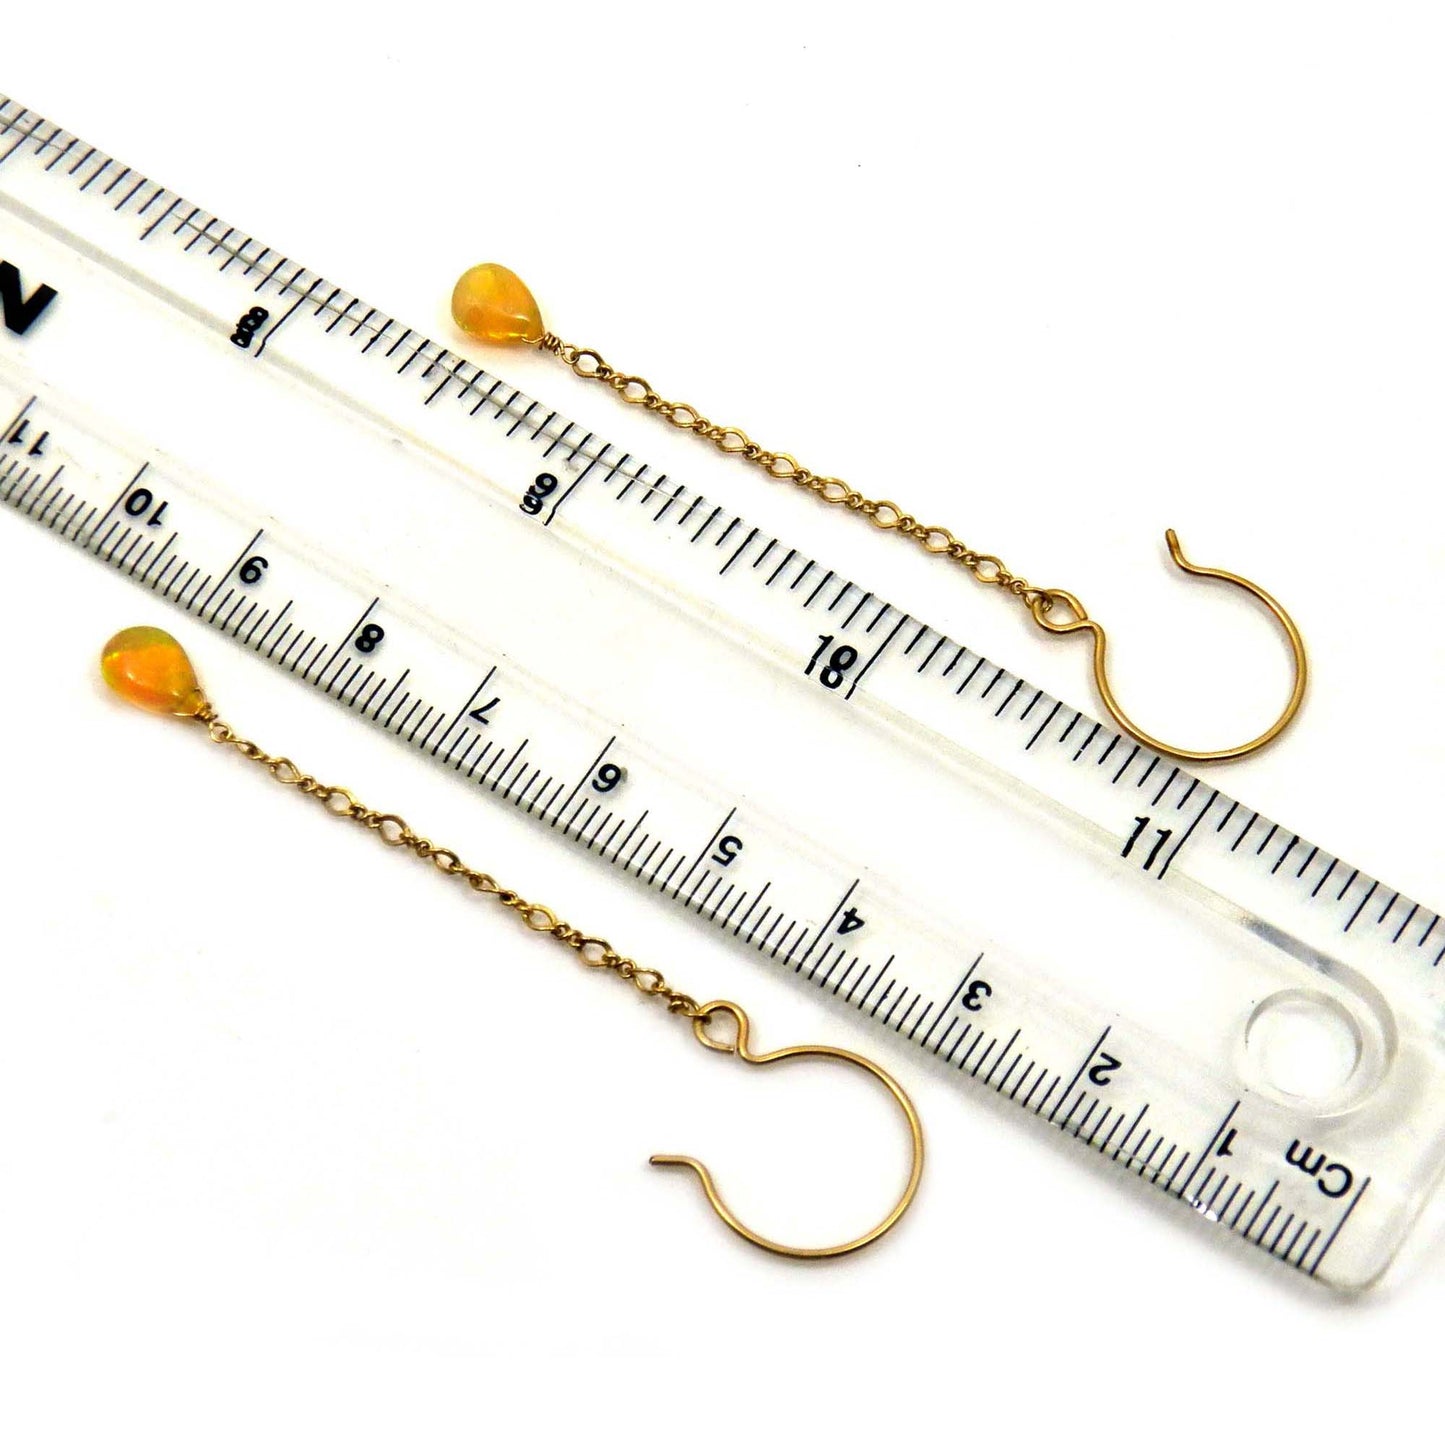 Welo Fair Opal Teardrop Earrings, 18K Gold Filled Long Chain, October Birthday Jewelry